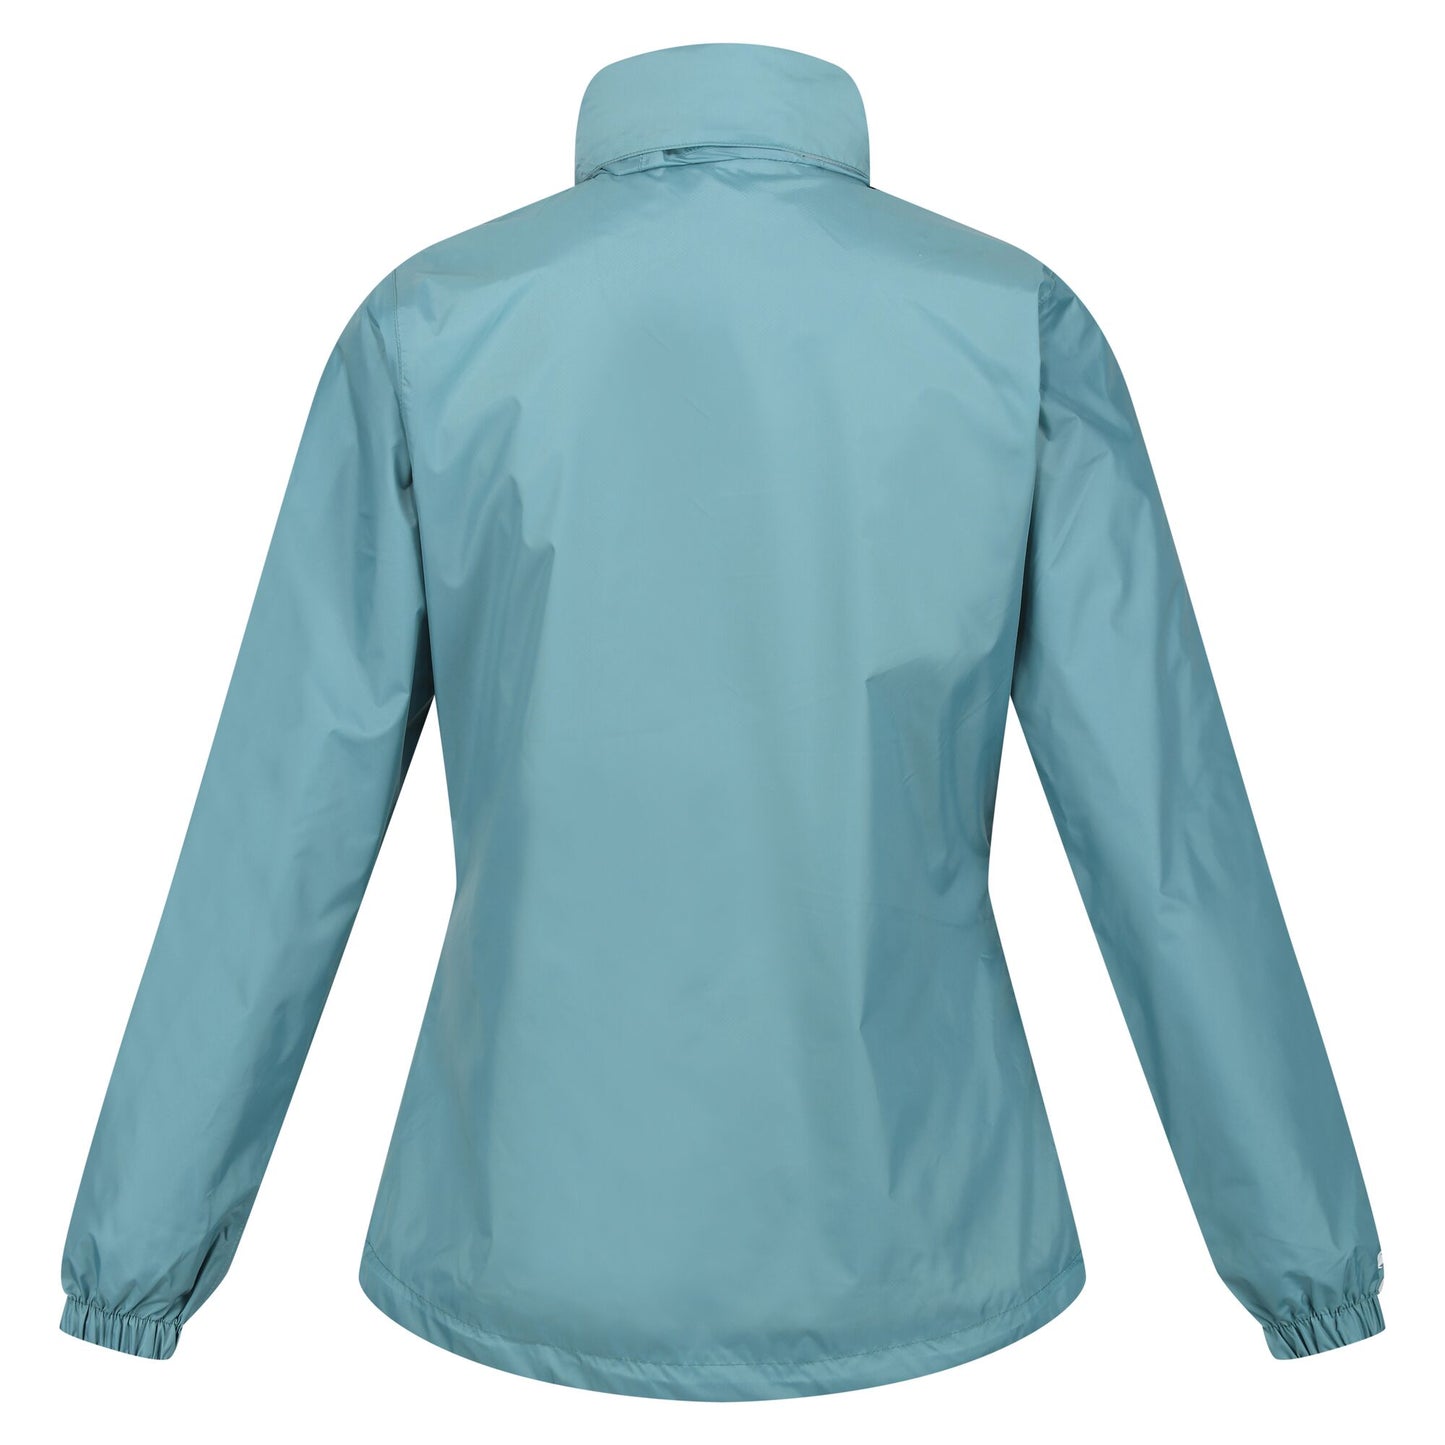 Regatta Women's Corinne IV Waterproof Packaway Jacket - Bristol Blue